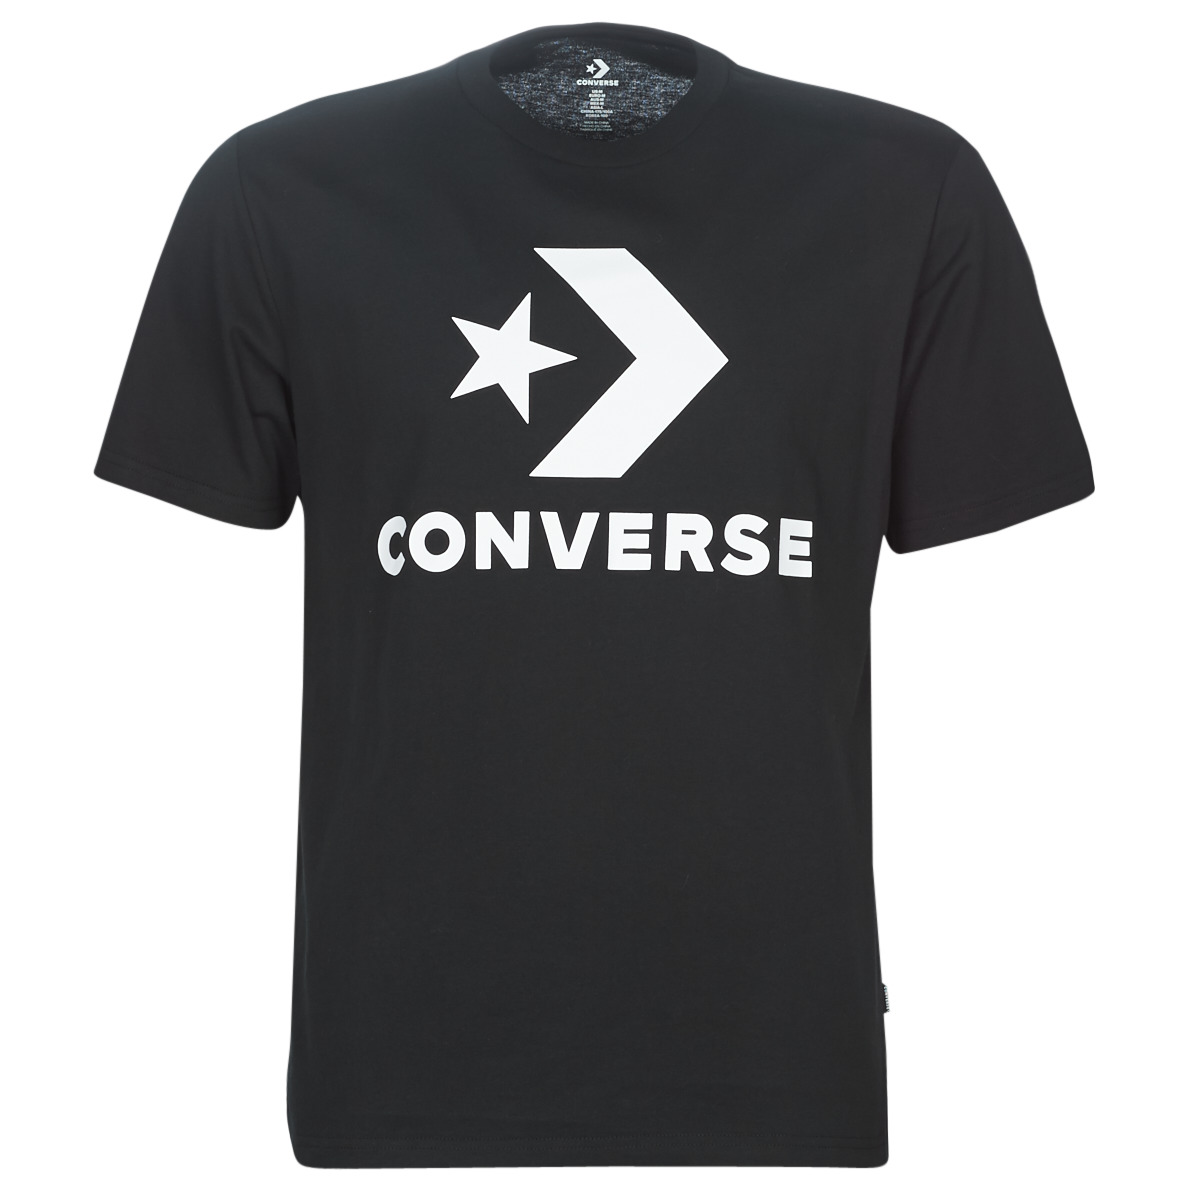 Îmbracaminte Bărbați Tricouri mânecă scurtă Converse STAR CHEVRON Negru